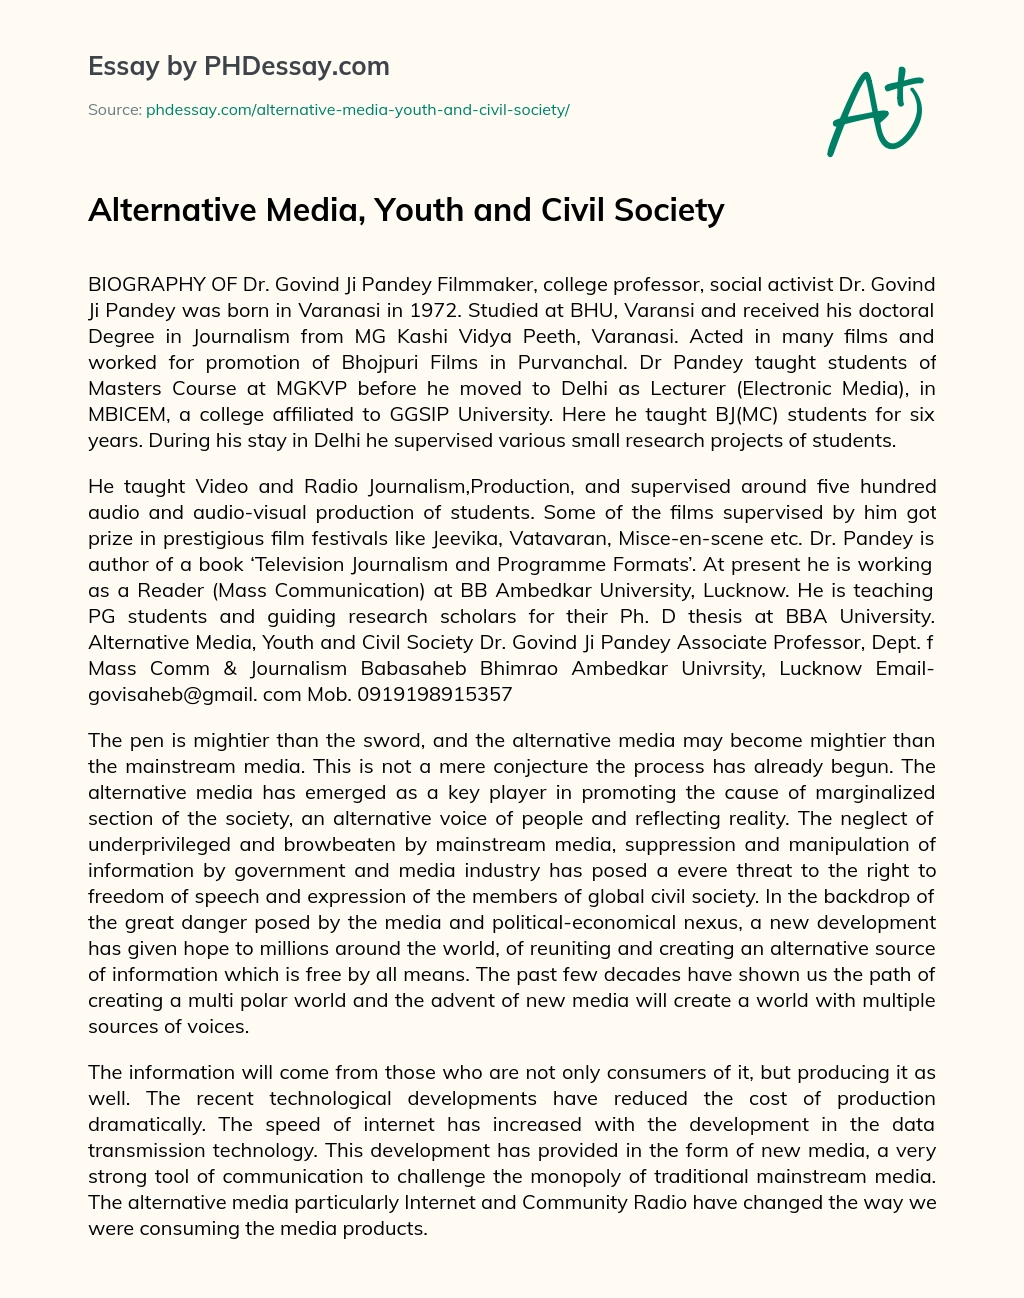 Alternative Media, Youth and Civil Society essay